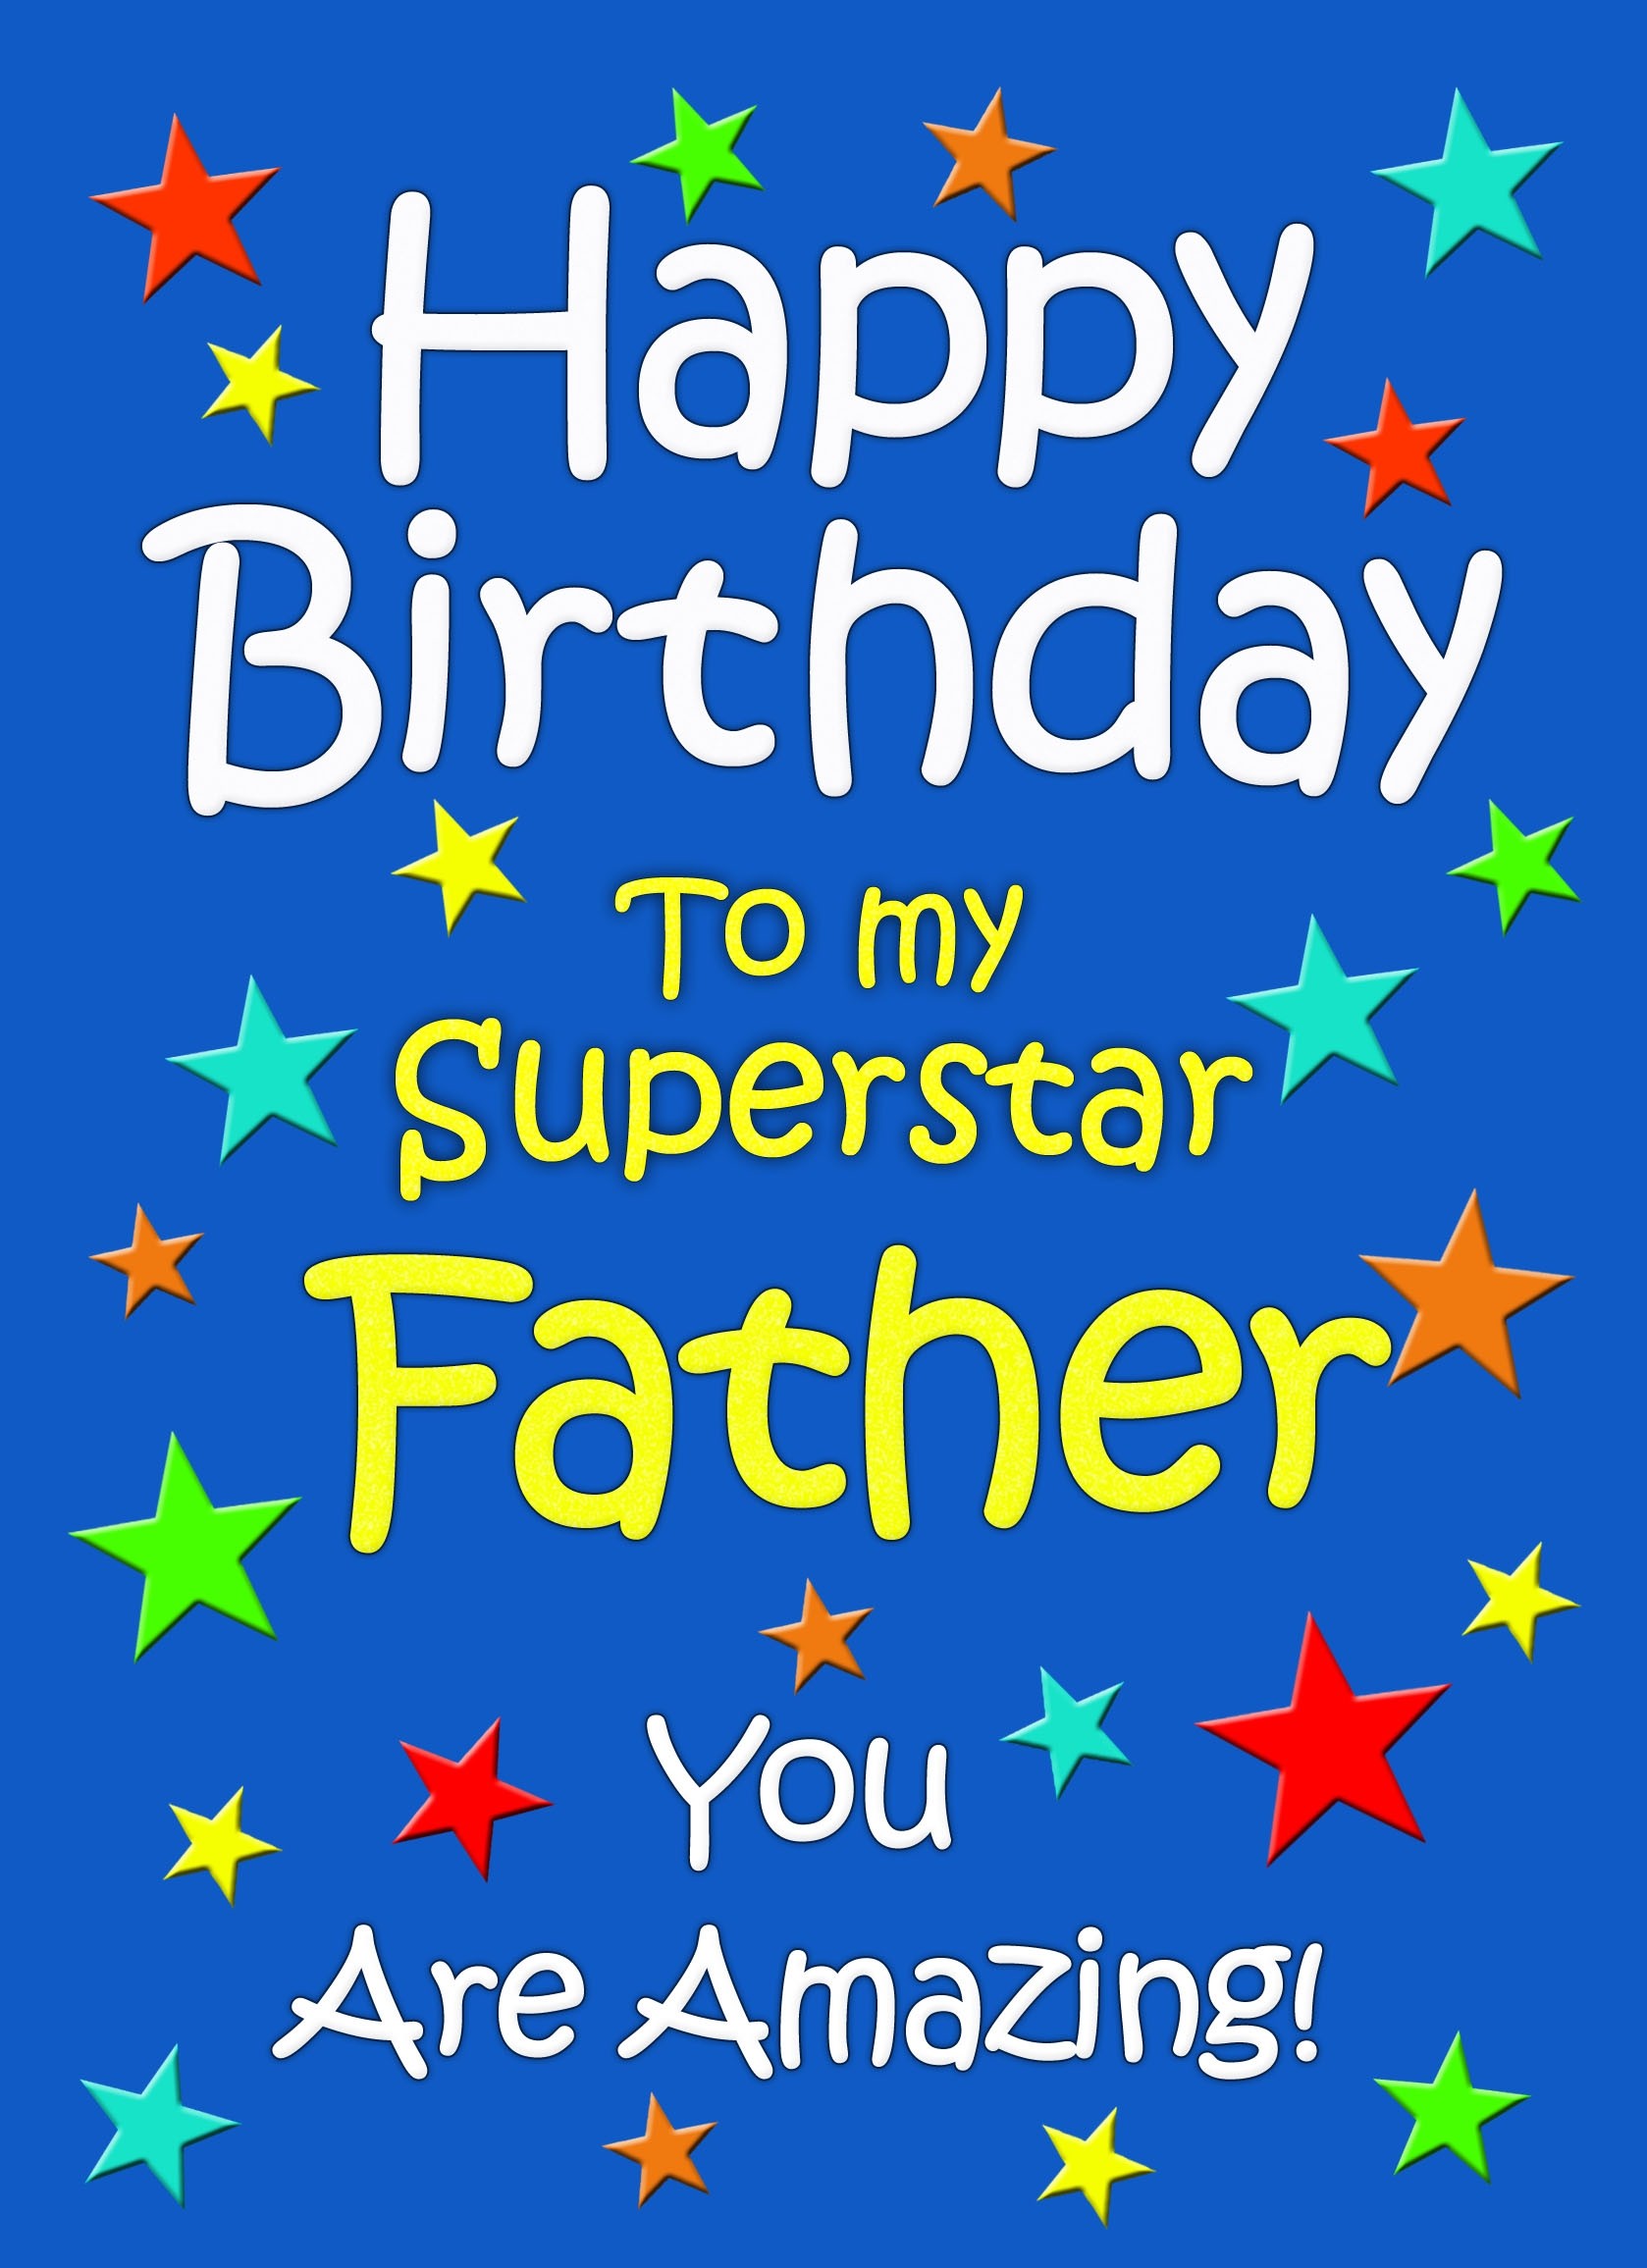 Father Birthday Card (Blue)